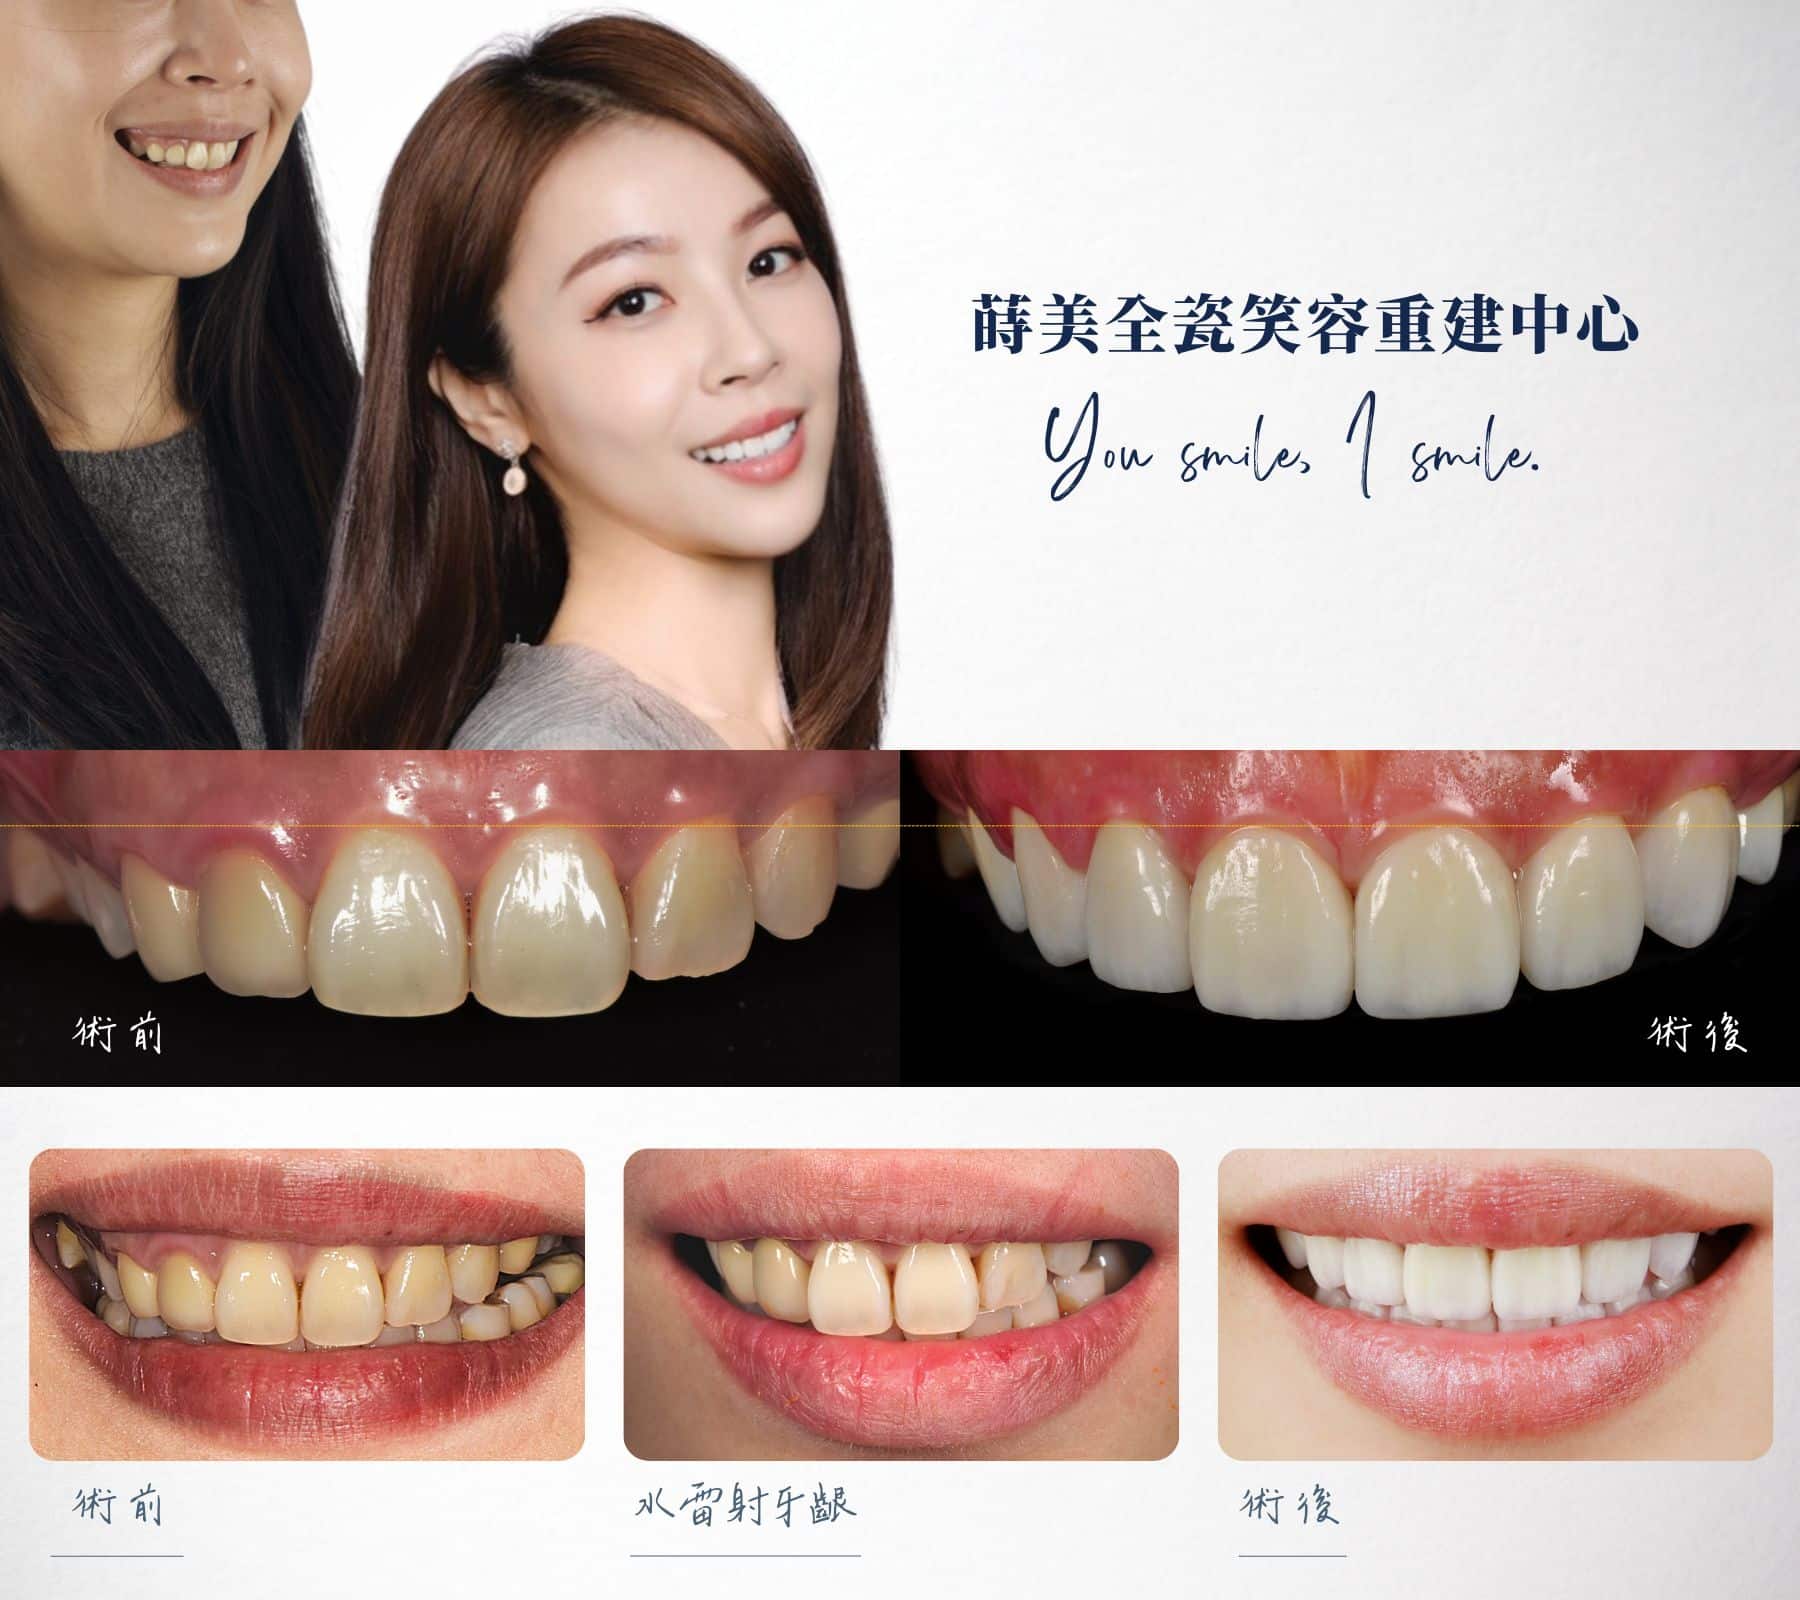 牙冠增長術加瓷牙貼片可以改善牙齦外露